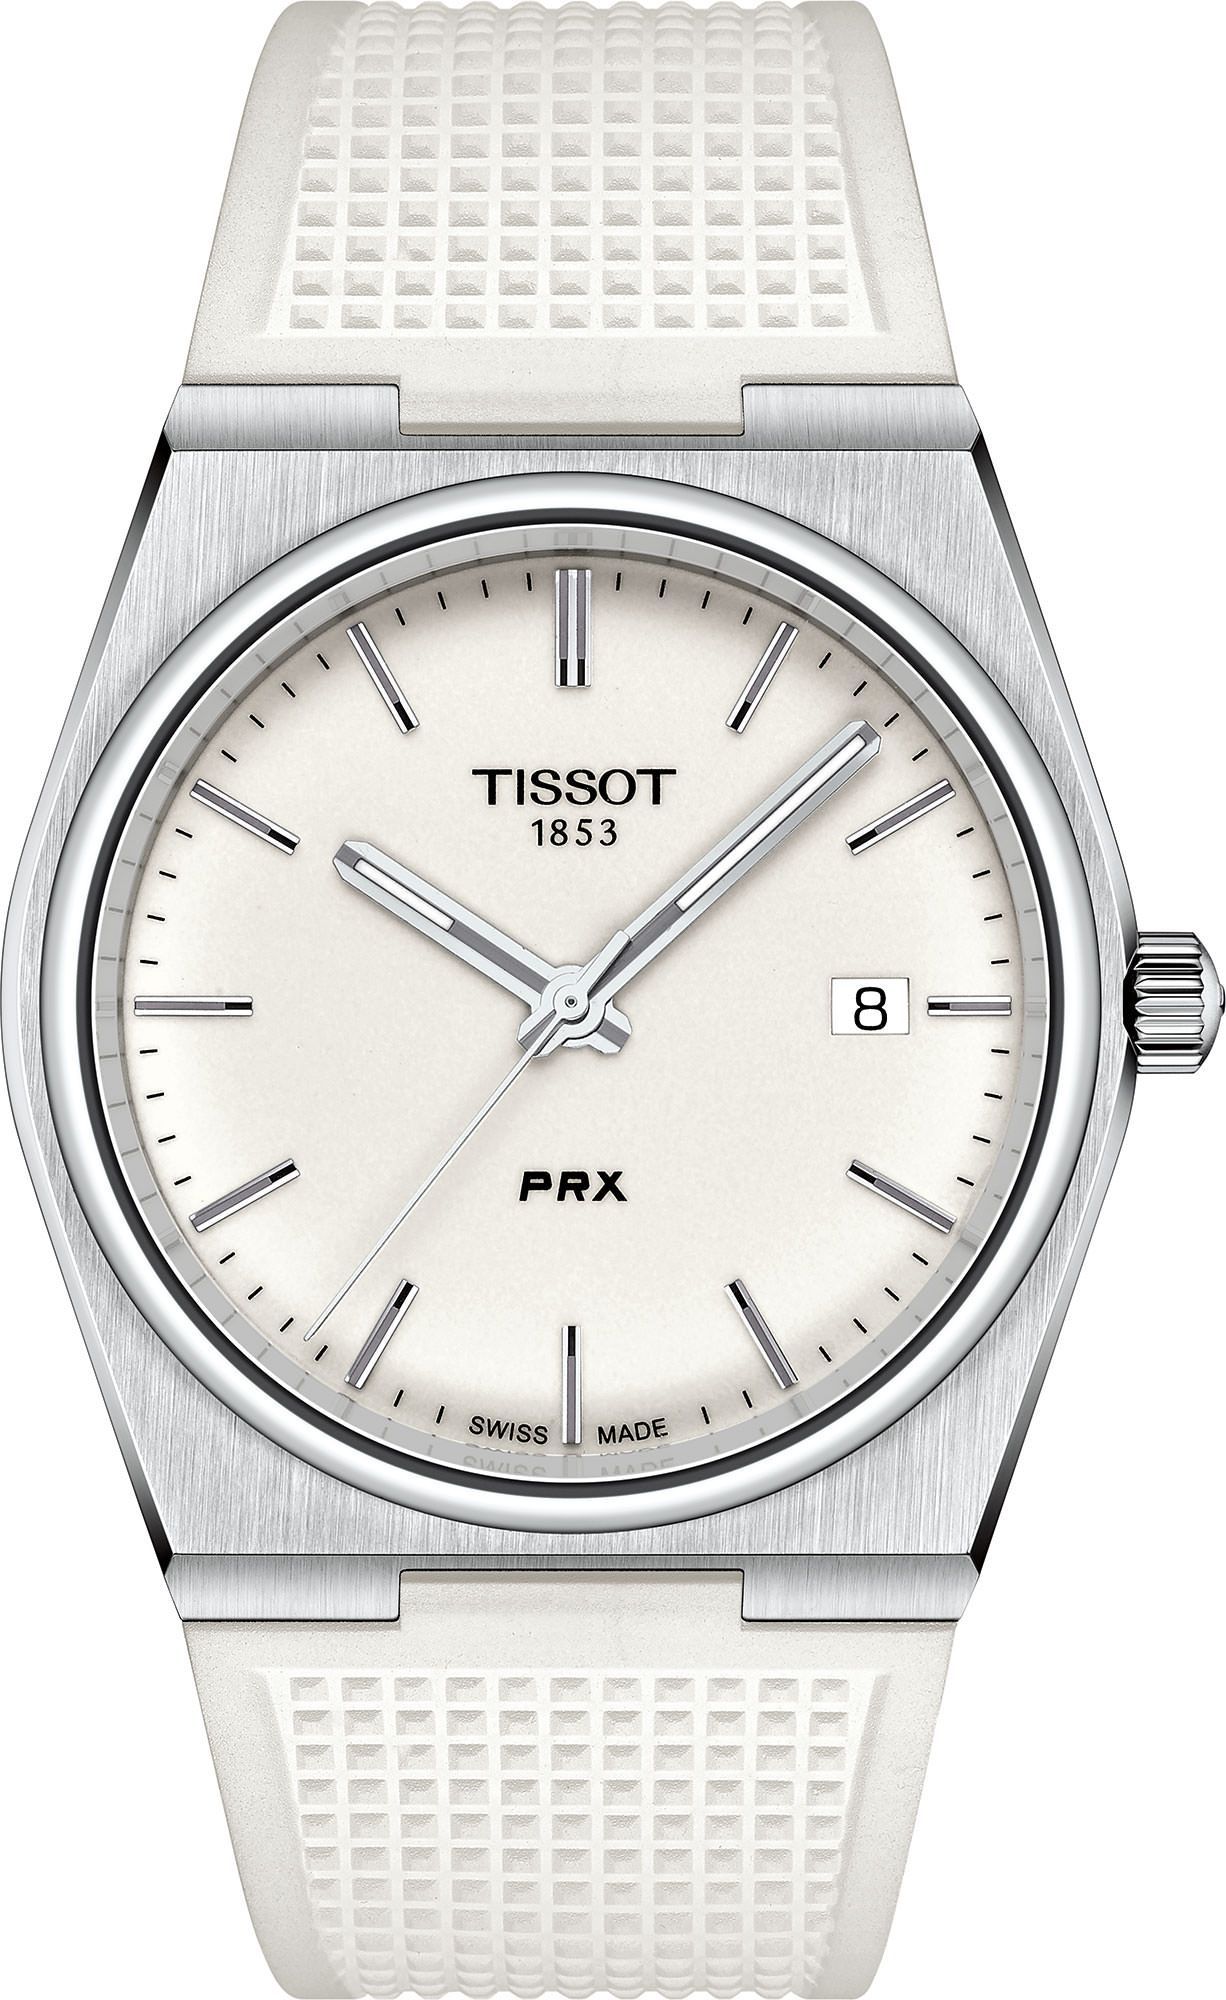 Tissot T-Classic Tissot PRX White Dial 40 mm Quartz Watch For Men - 1